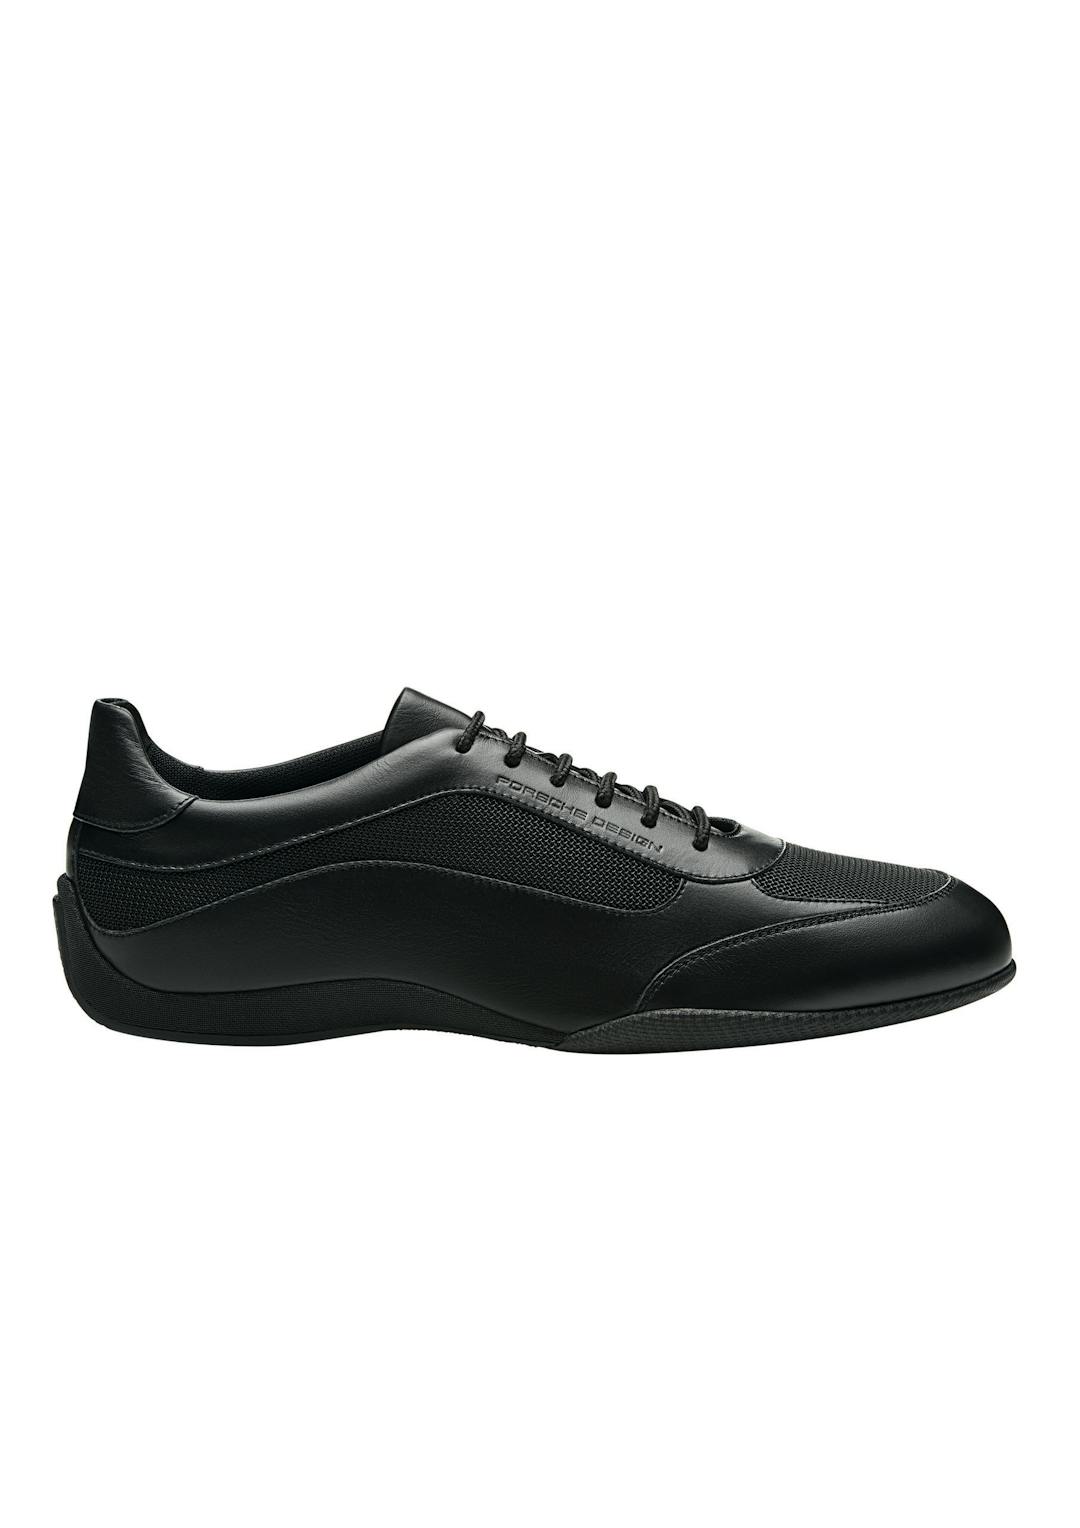 PorscheDesign_Shoes_Racer_Sneaker_Black